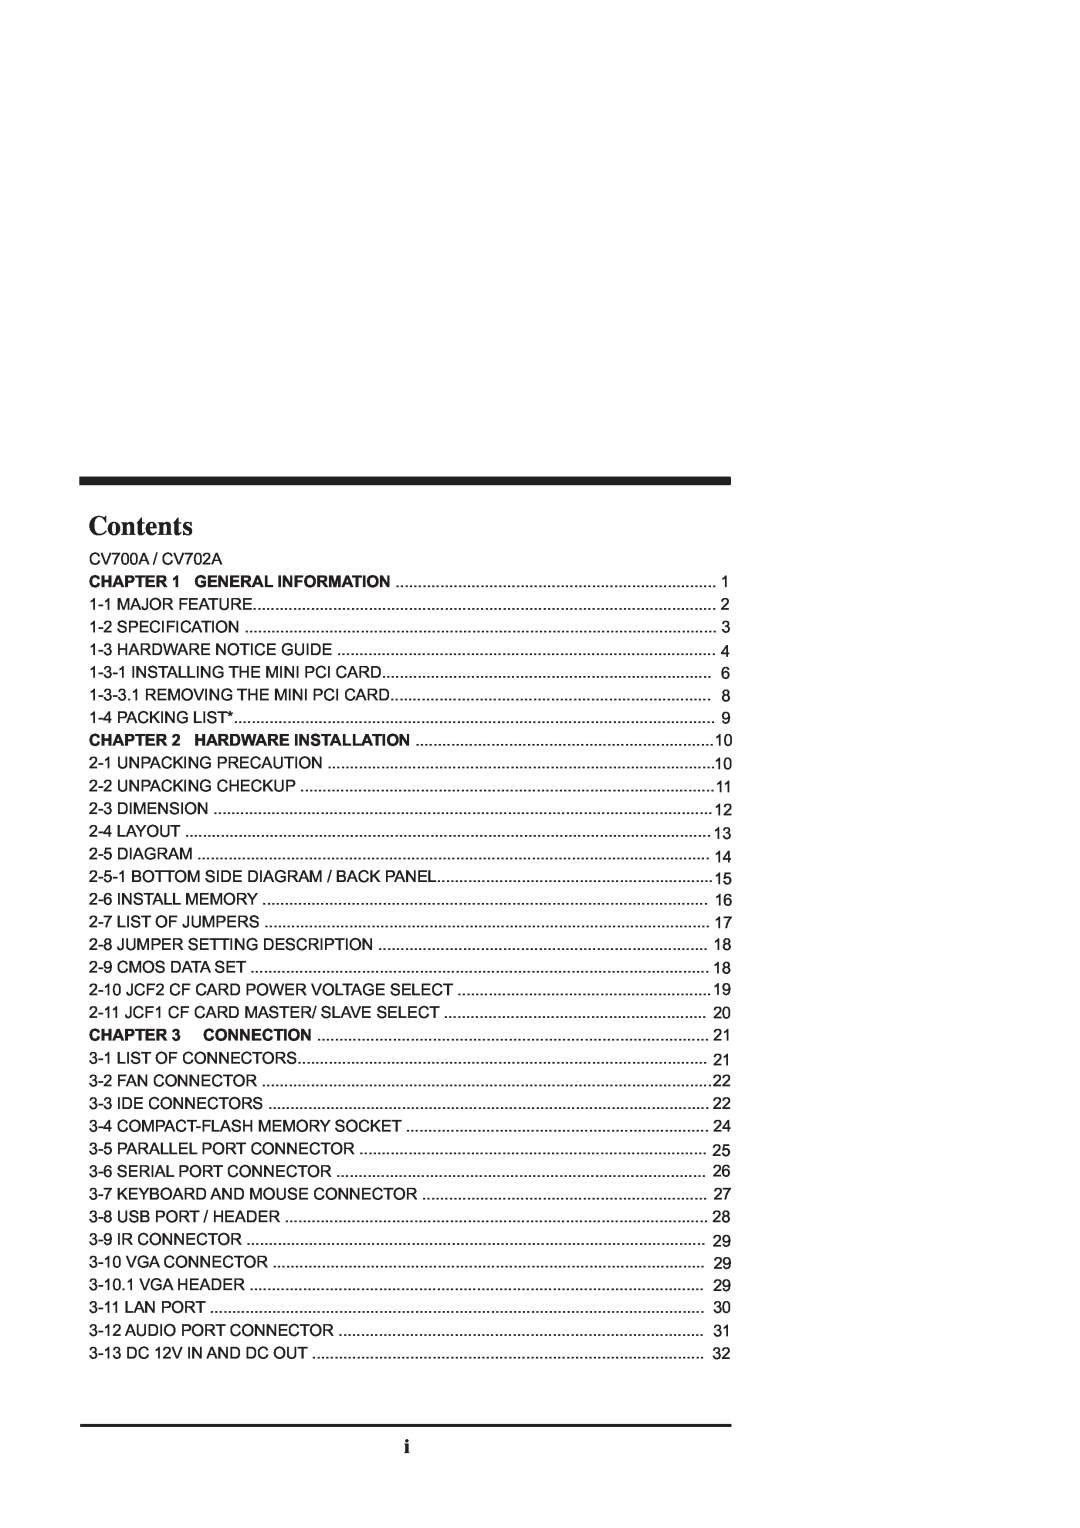 Intel CV702A, CV700A manual Contents, Chapter 